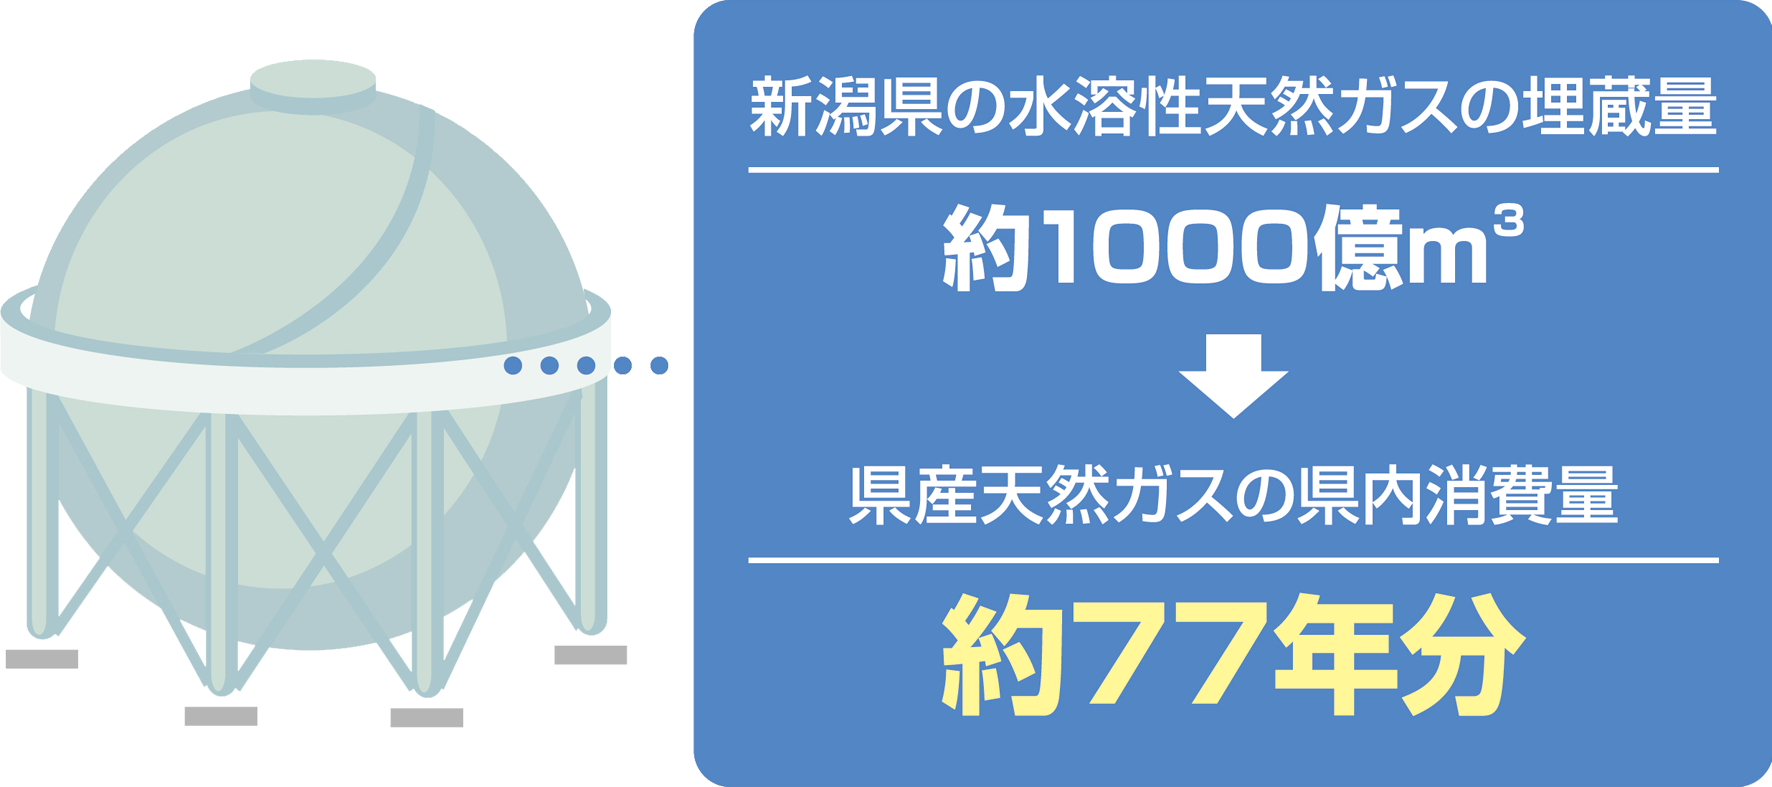 新潟県の水溶性天然ガスの埋蔵量：約1000億m3　→　新潟県の燃料ガス消費量：230万人×役77年分